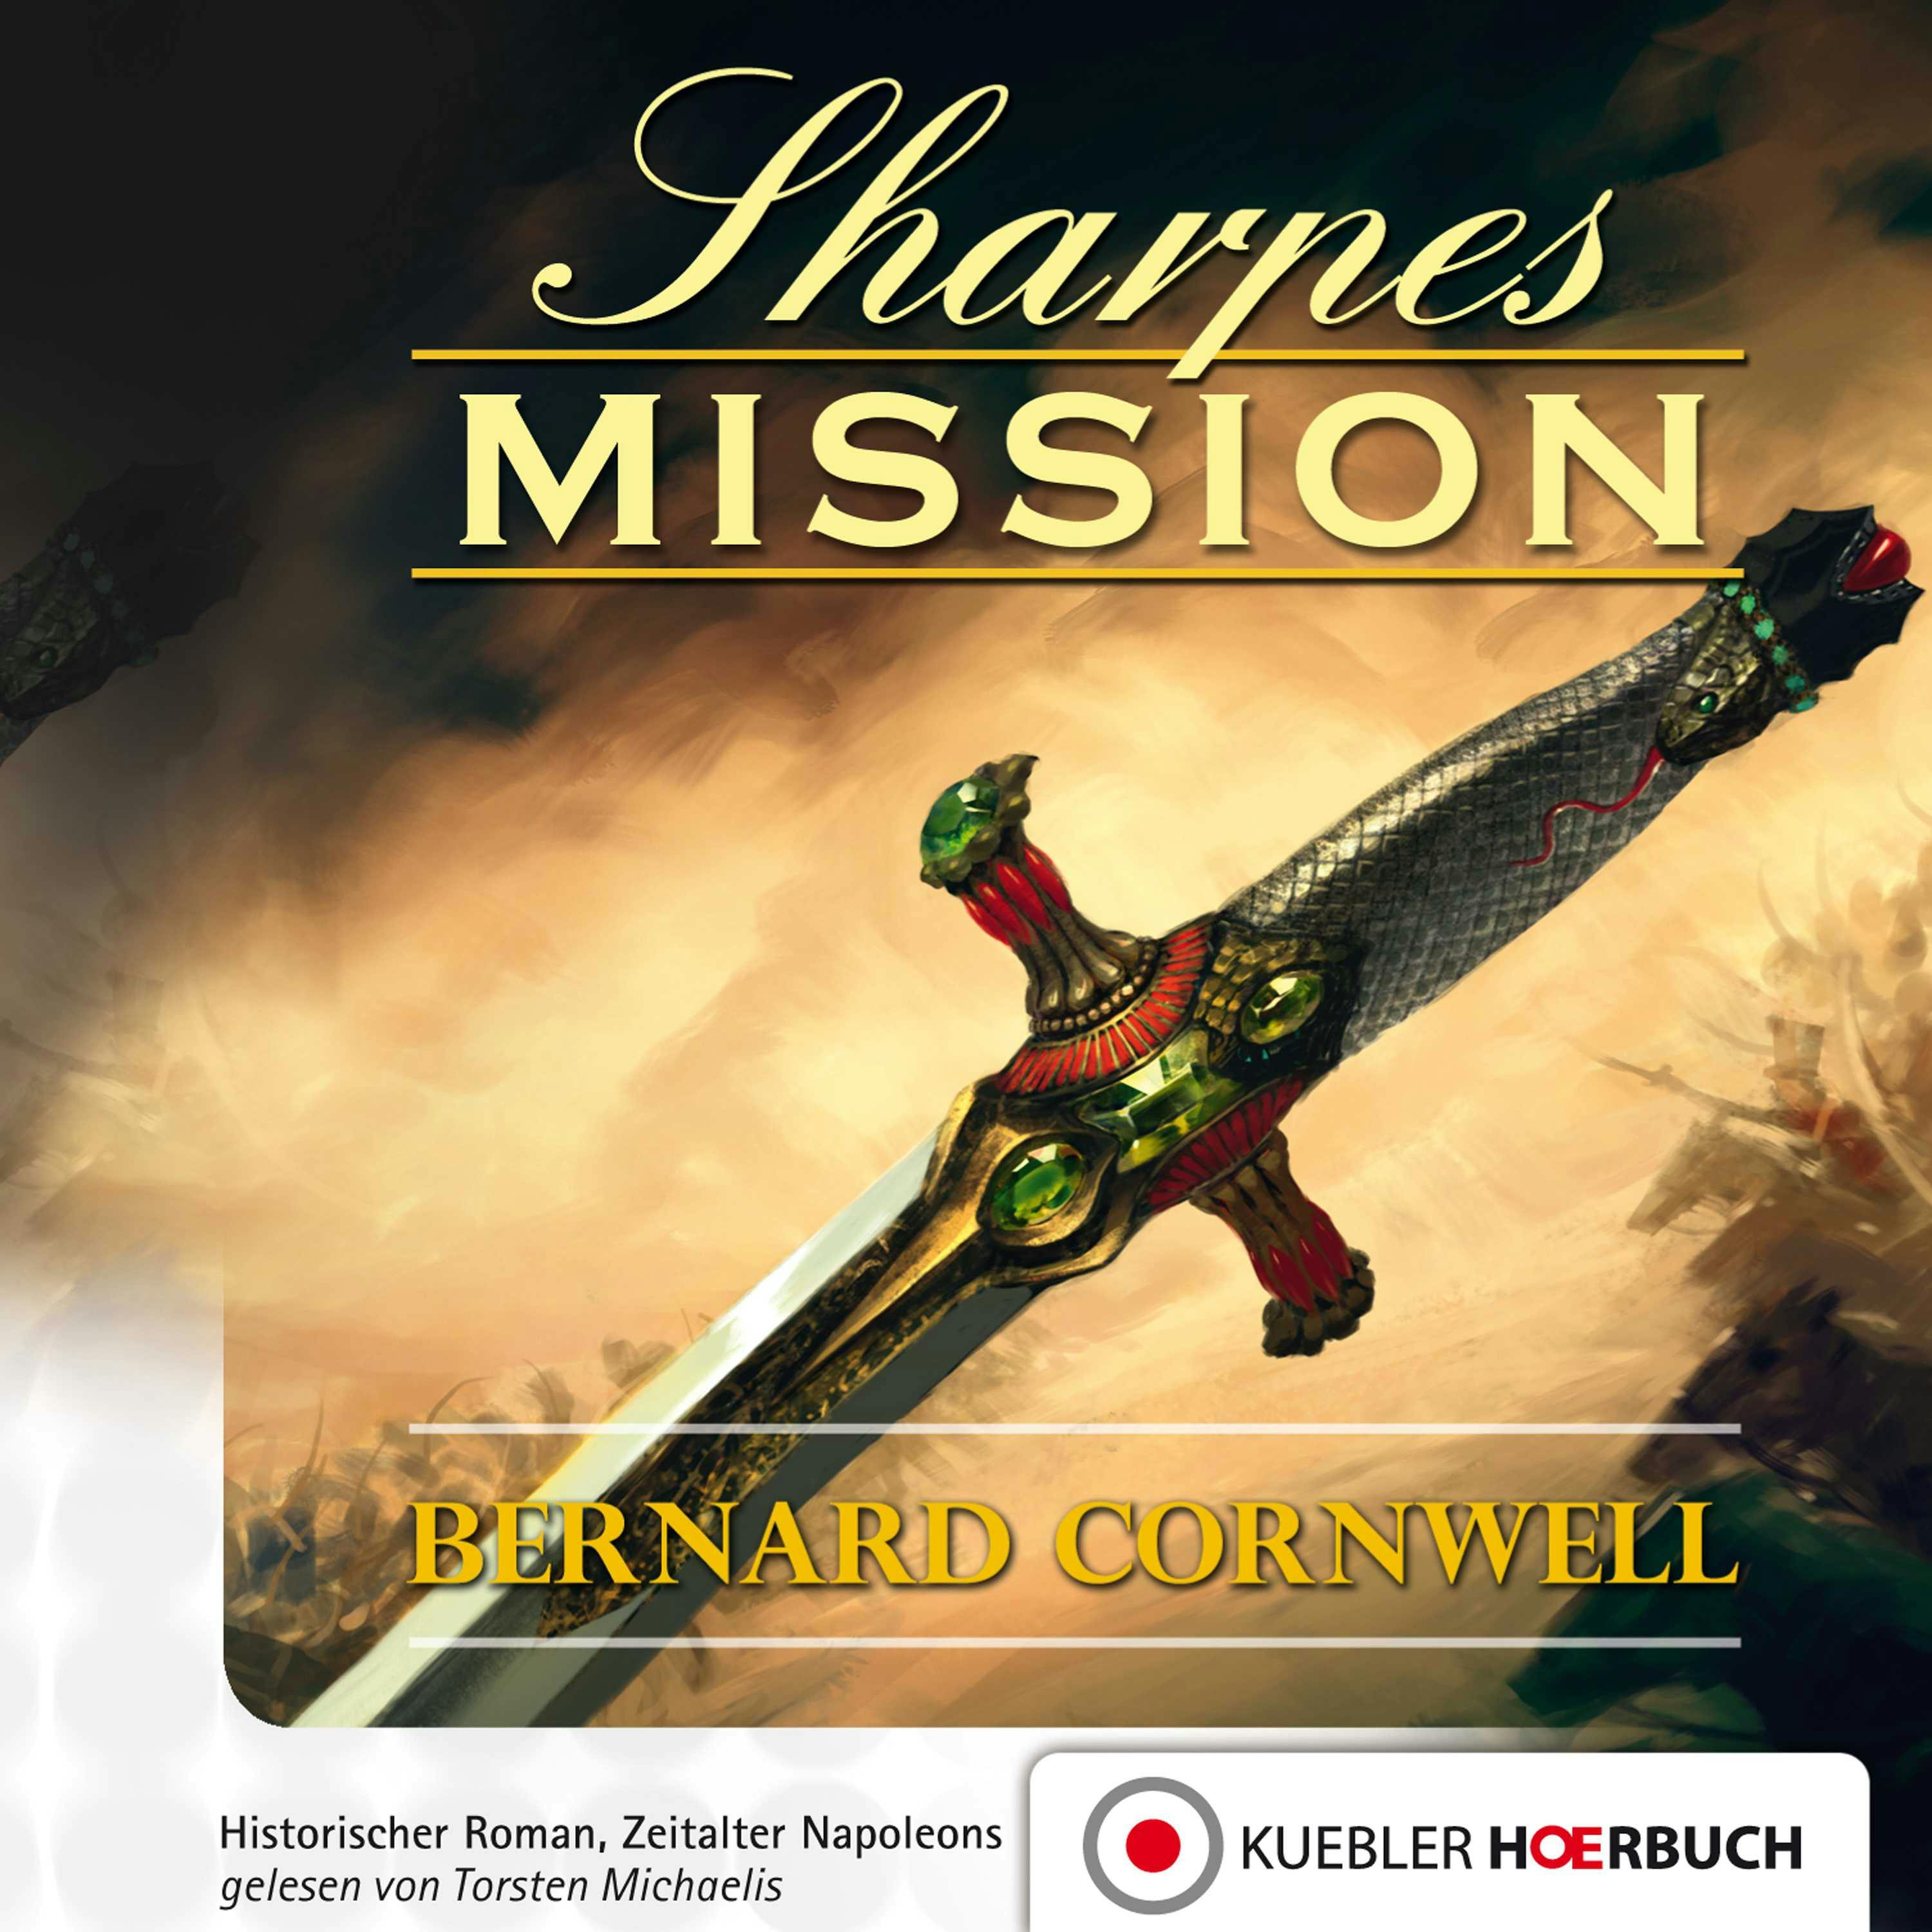 Sharpes Mission: Episode 7 - Bernard Cornwell